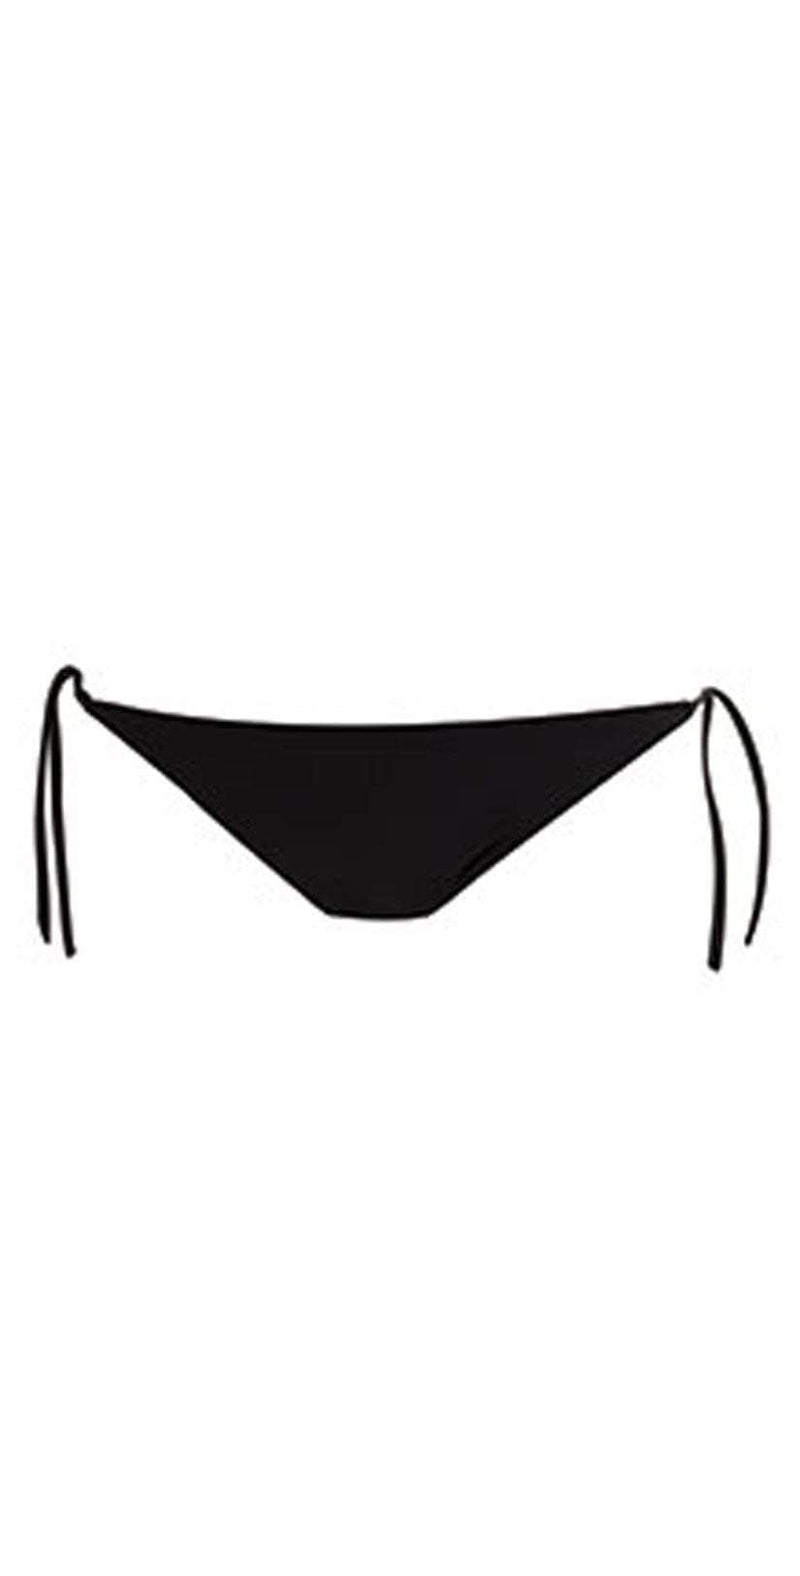 LSpace Sensual Solids Flynn Top (Black) Women's Swimwear. Get in